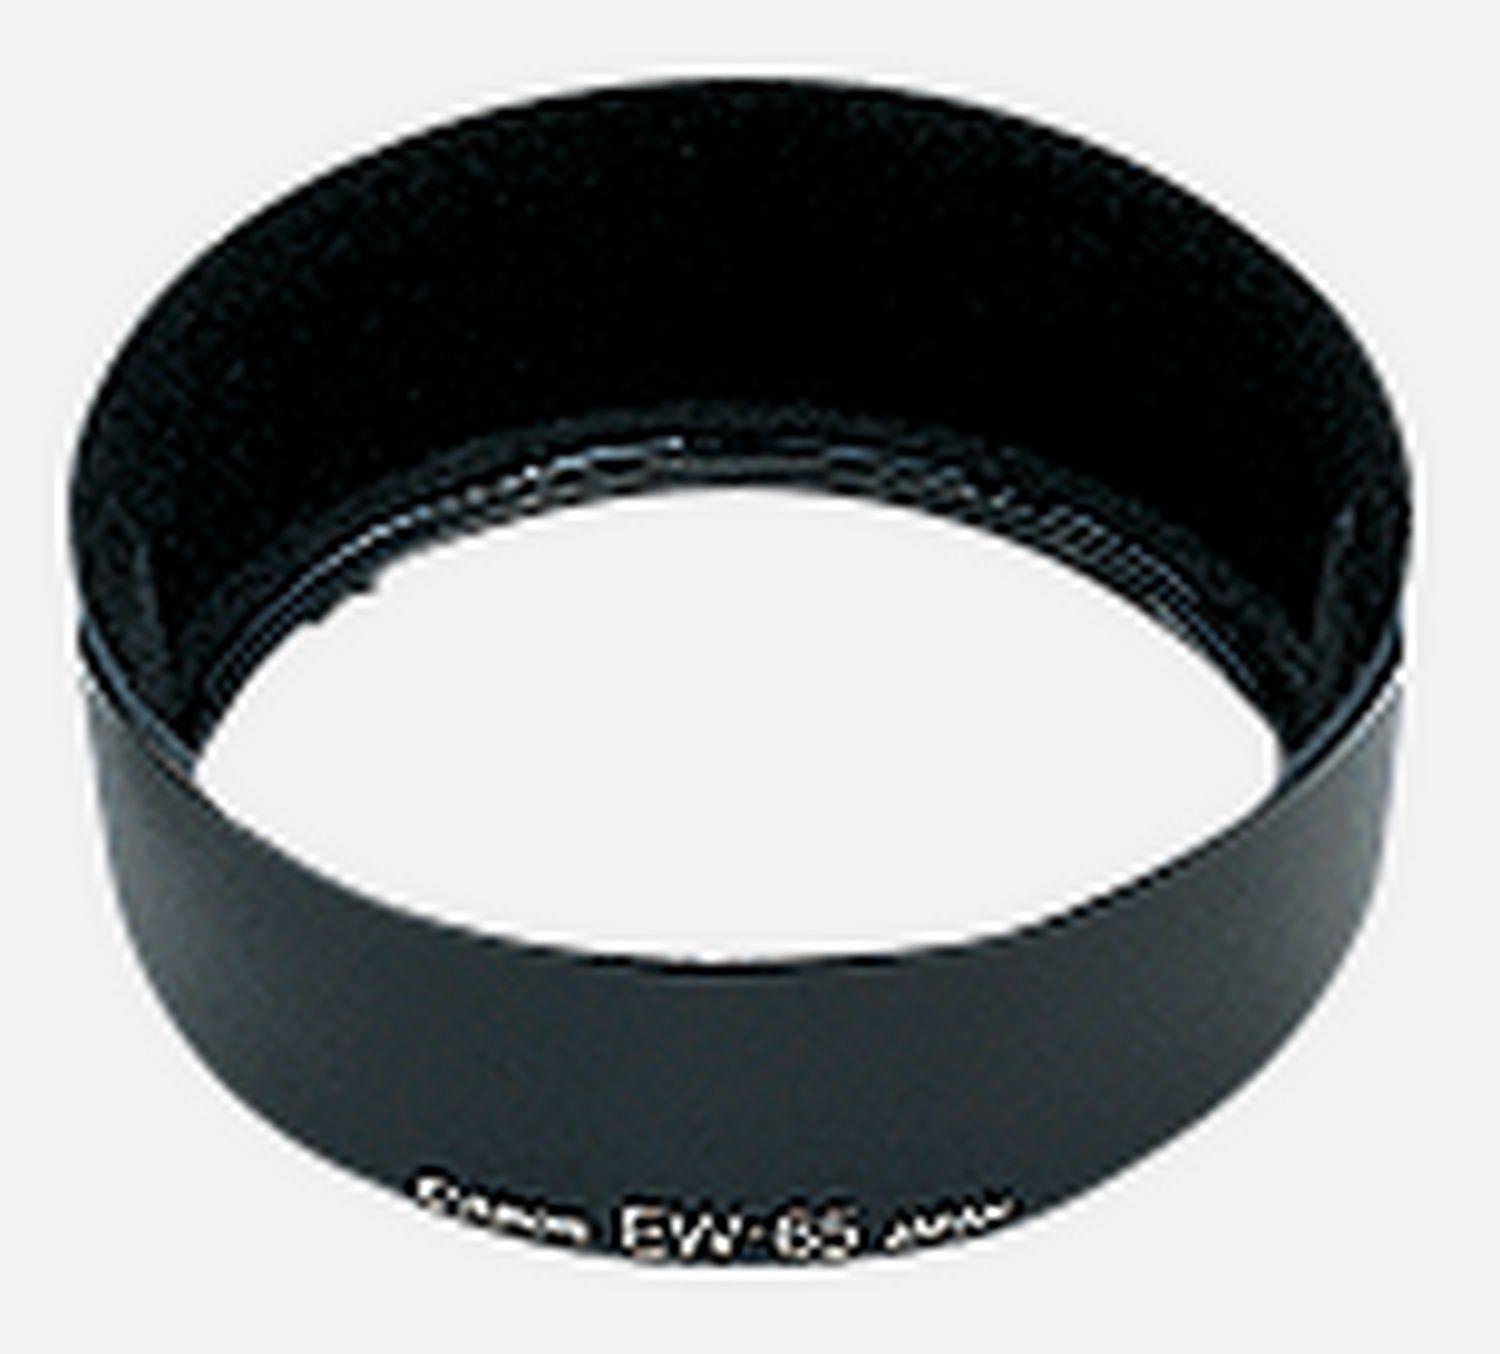 Passt auf das Objektiv EF 28mm 1:1,8 USM, reduziert Reflexionen, die durch direkt auf die Frontlinse auffallendes Licht hervorgerufen werden.      Kompatibilitt       EF 28mm f/2.8         EF 35mm f/2